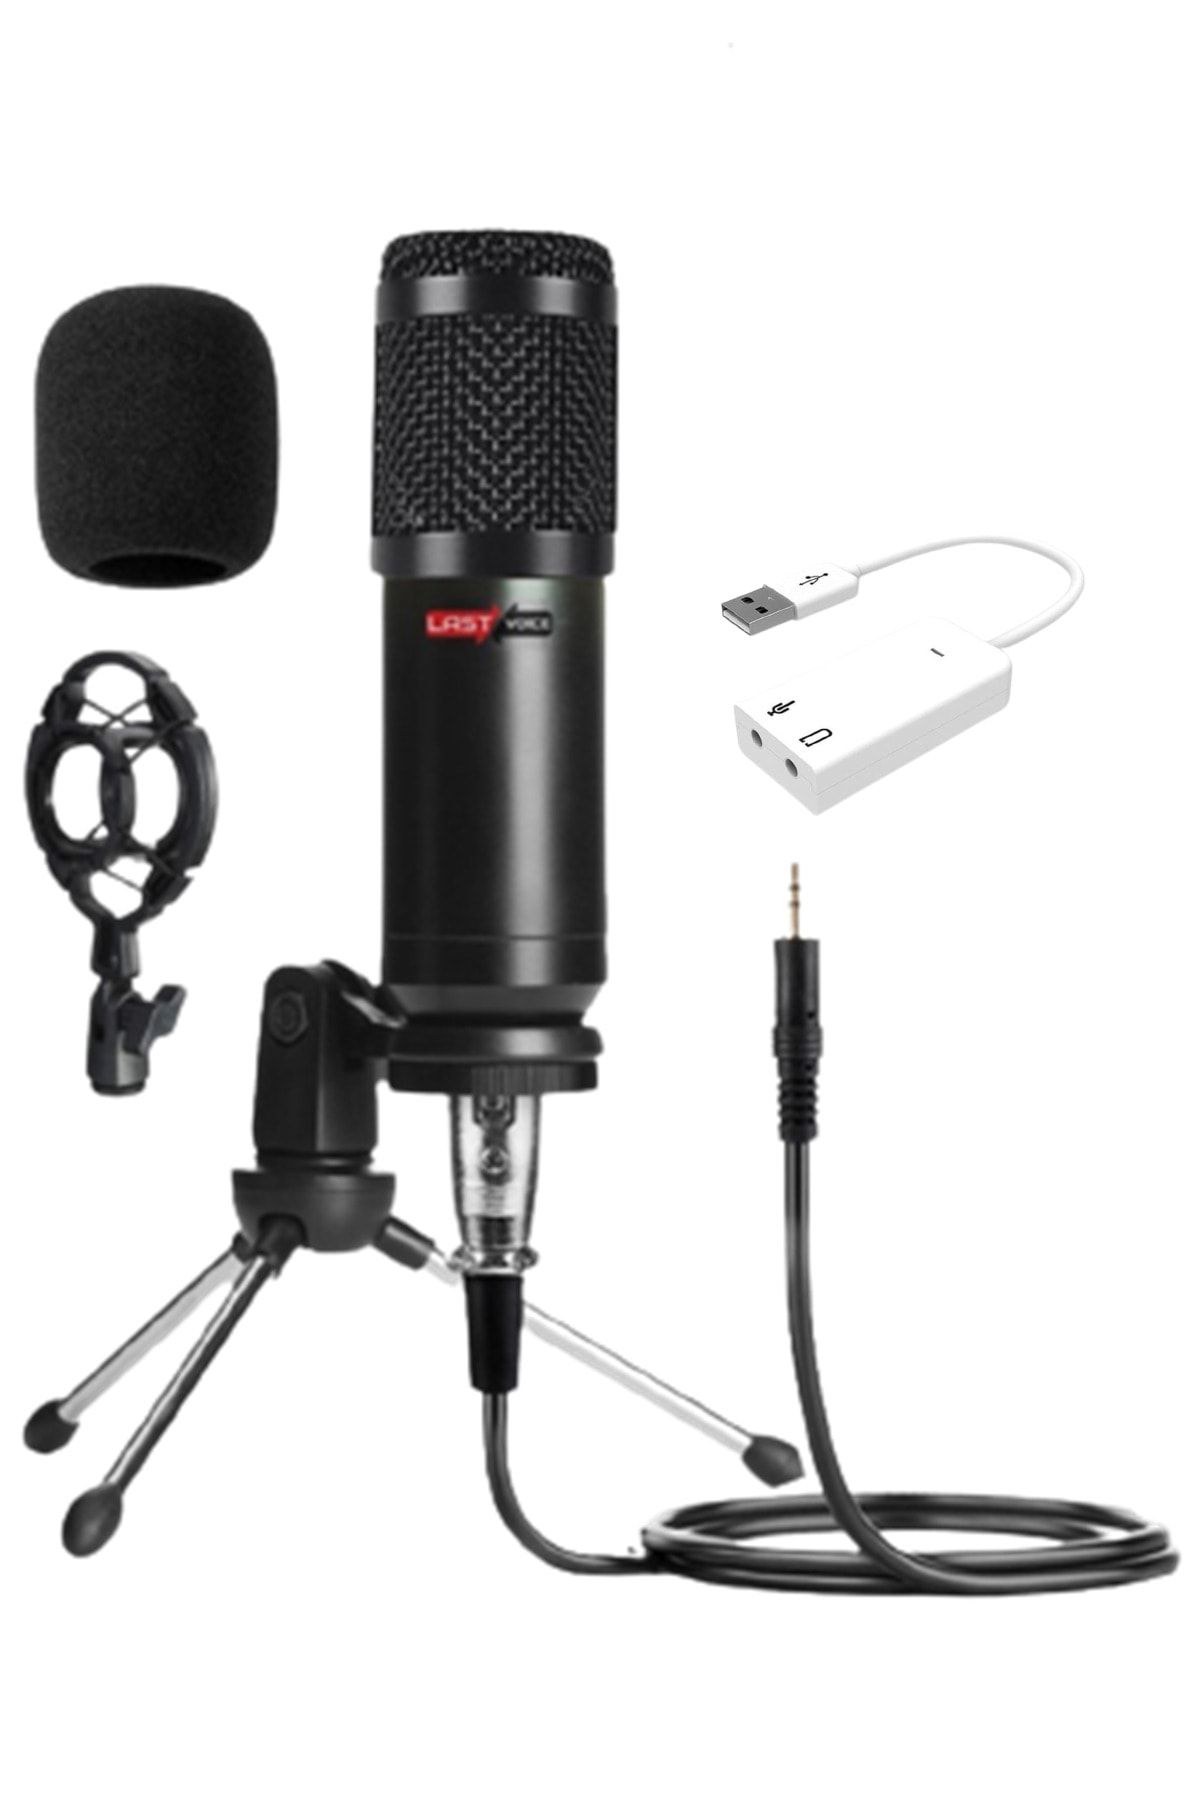 Lastvoice Bm800 Full Black Condenser Youtuber Mikrofon + 7.1 Ses Kartı